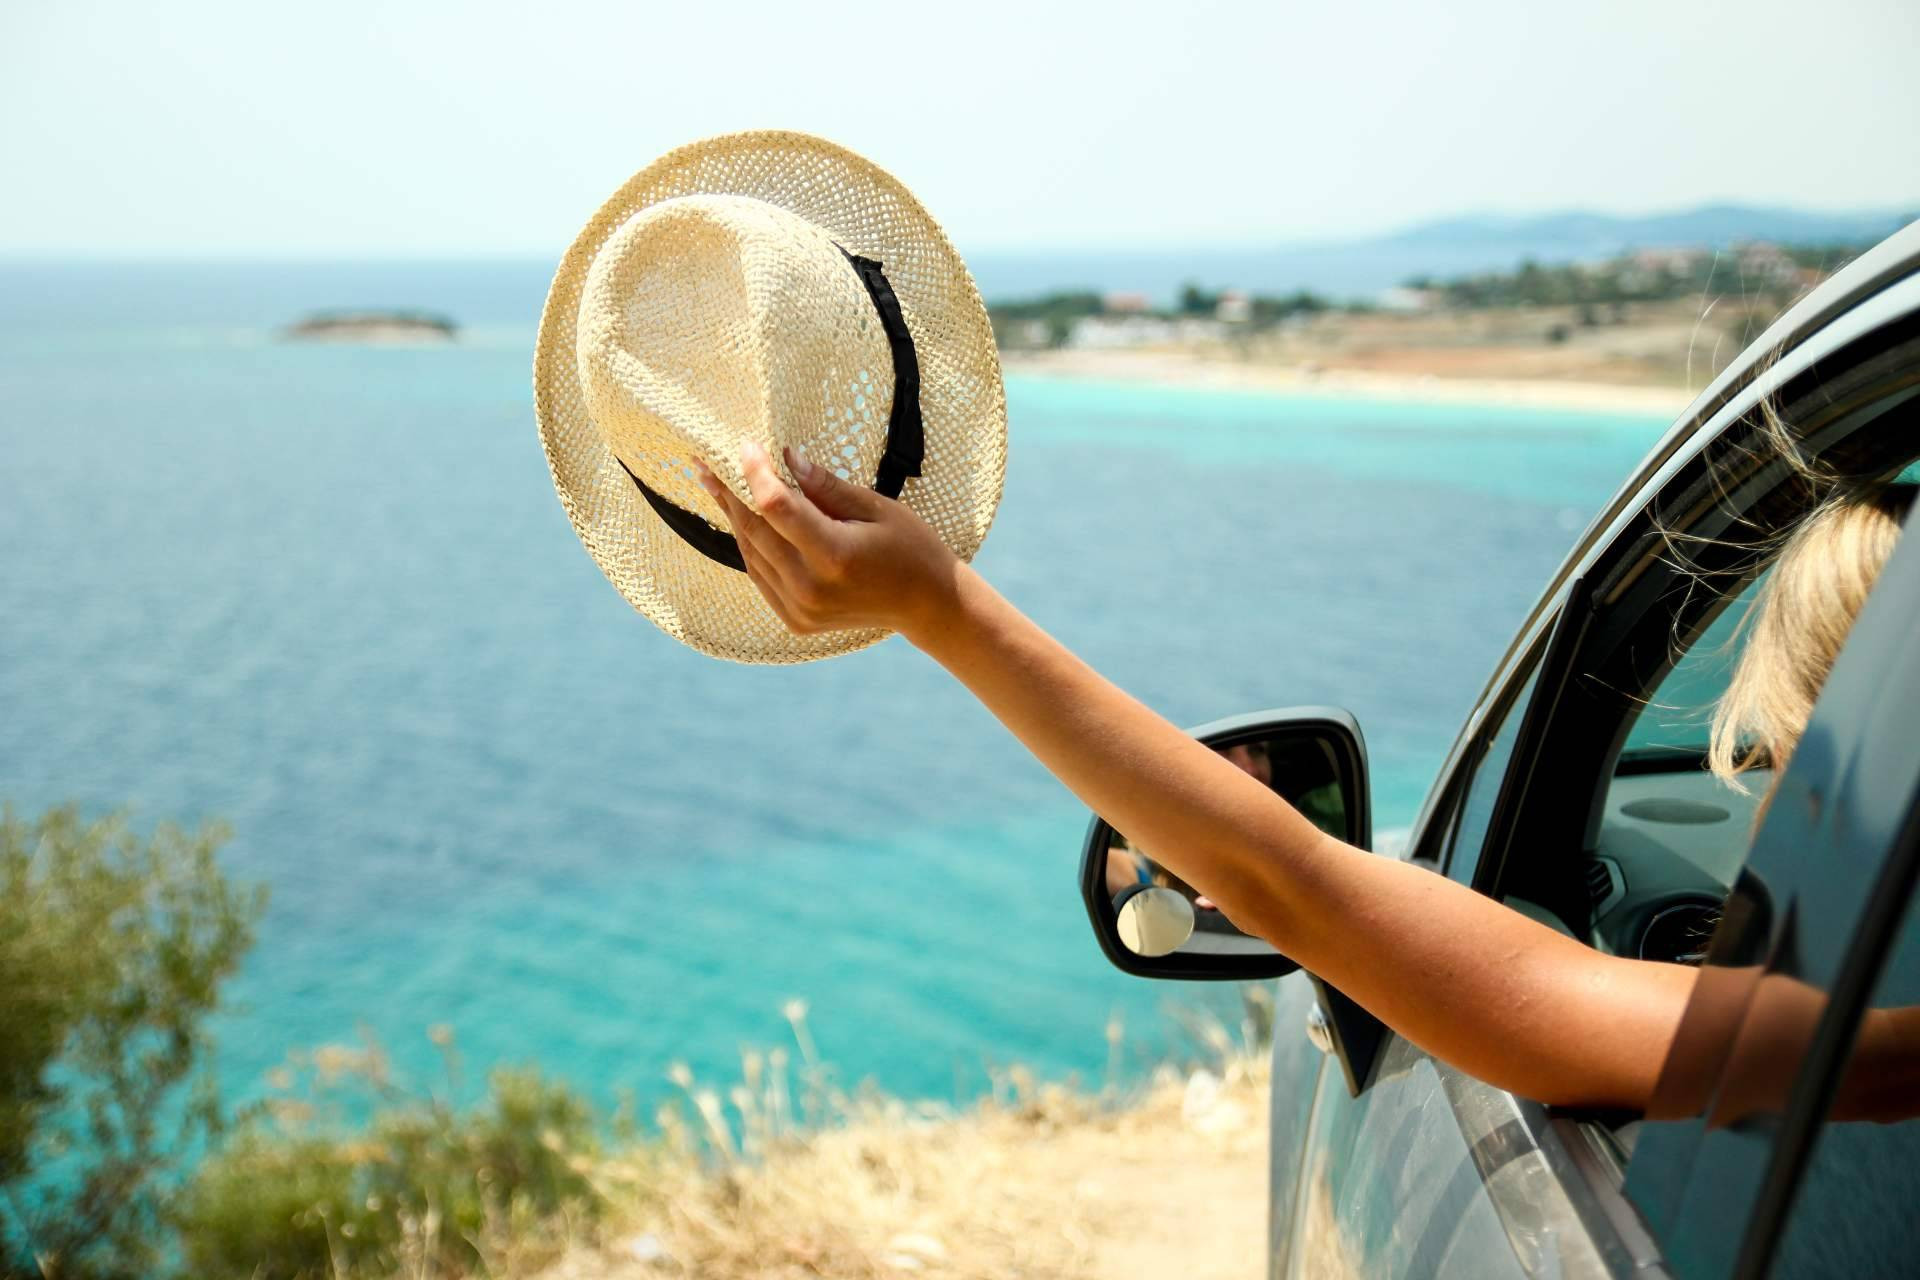  Alquicoche explica las ventajas de alquilar un coche para las vacaciones de verano 